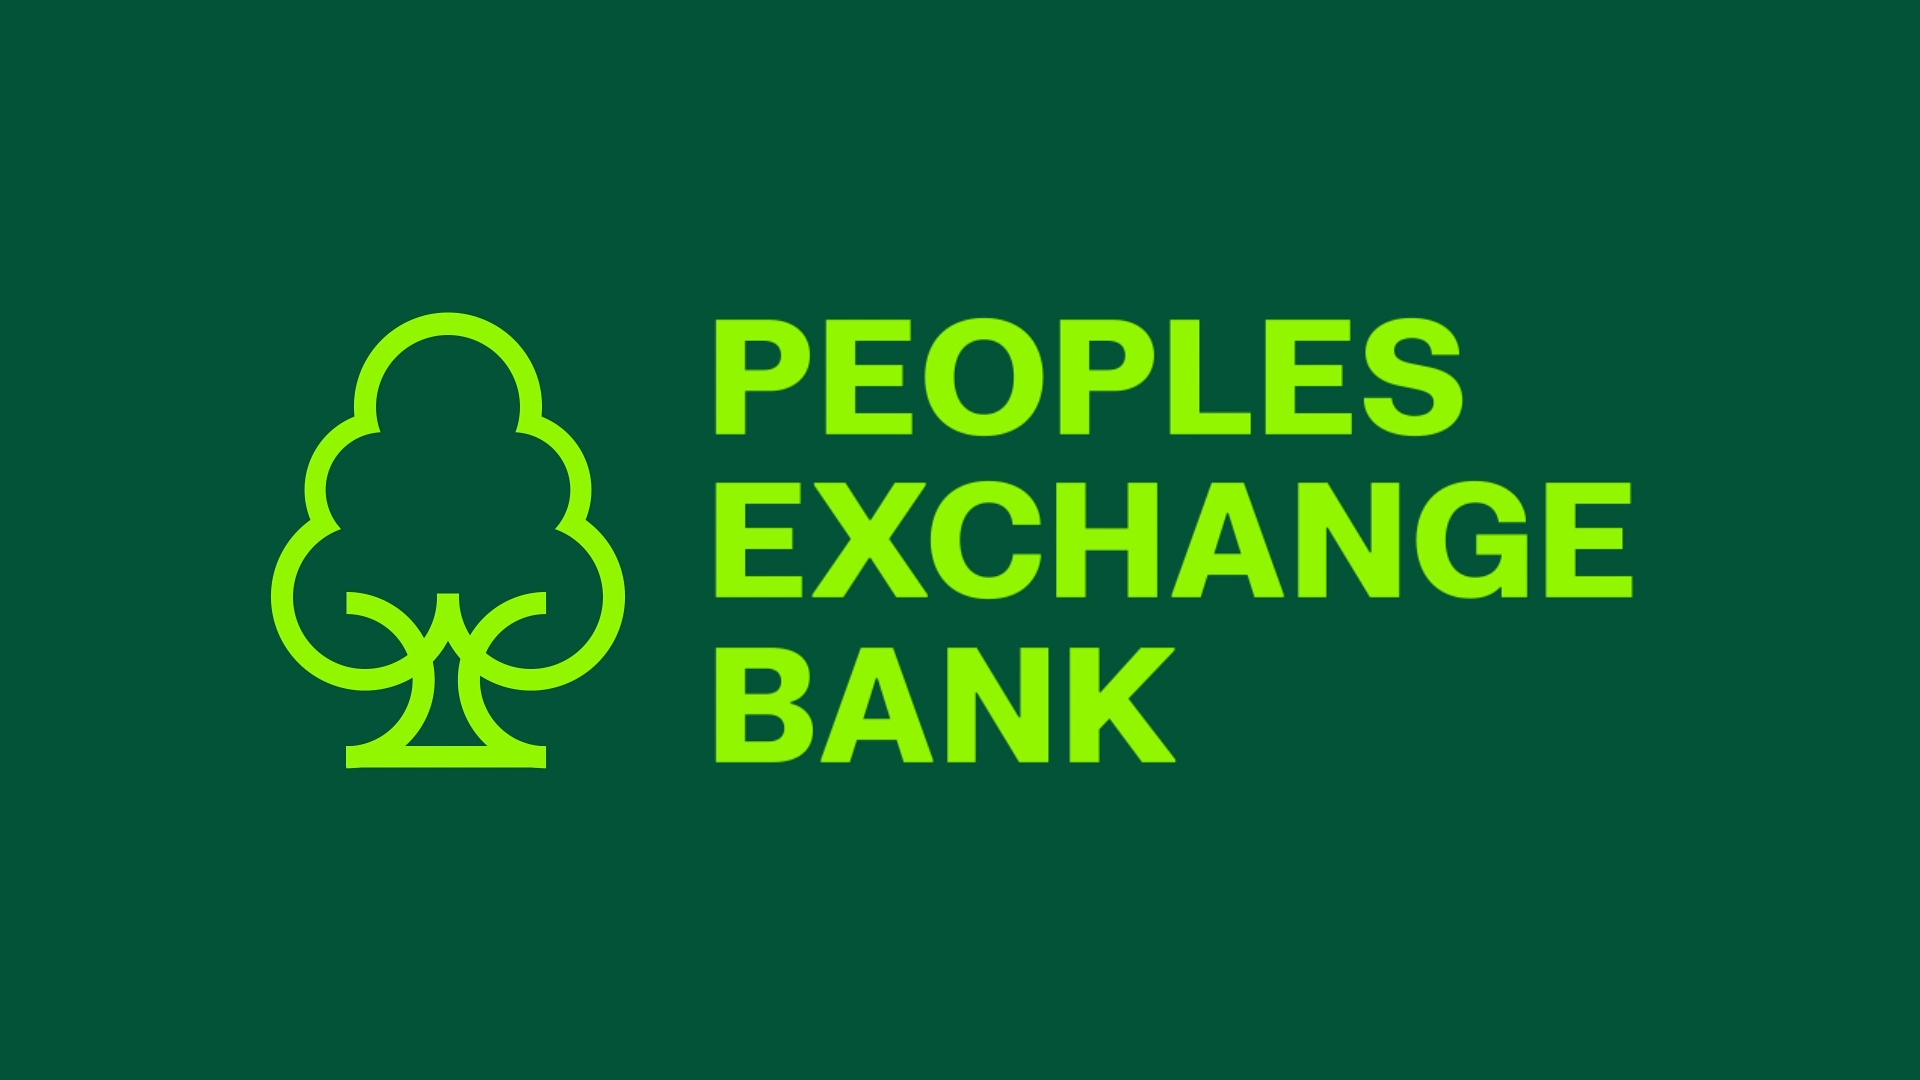 Peoples Exhange Bank Logo Animation Branding